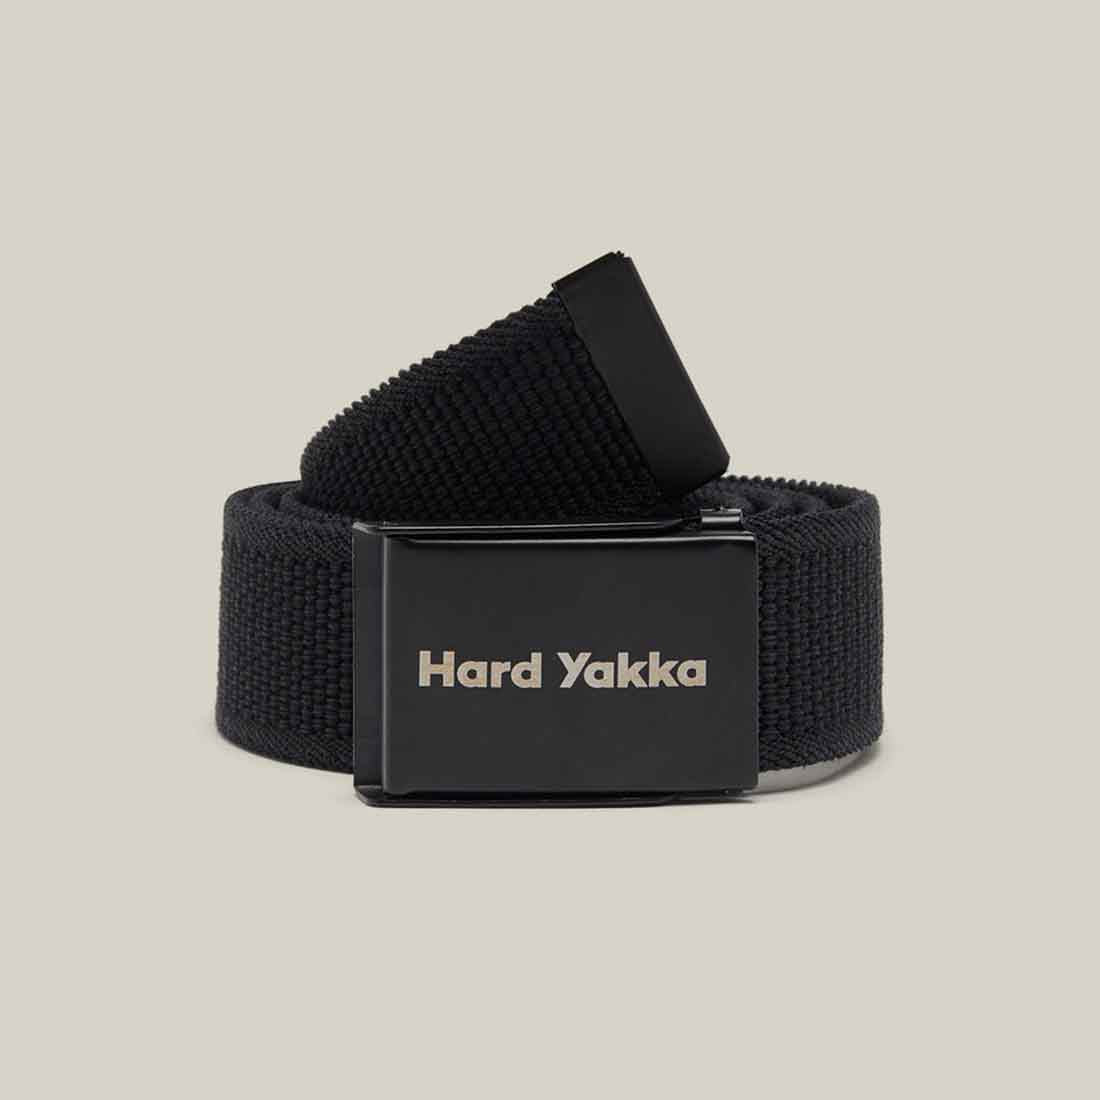 Hard Yakka Stretch Webbing Belt in Black | Belts for Men & Women